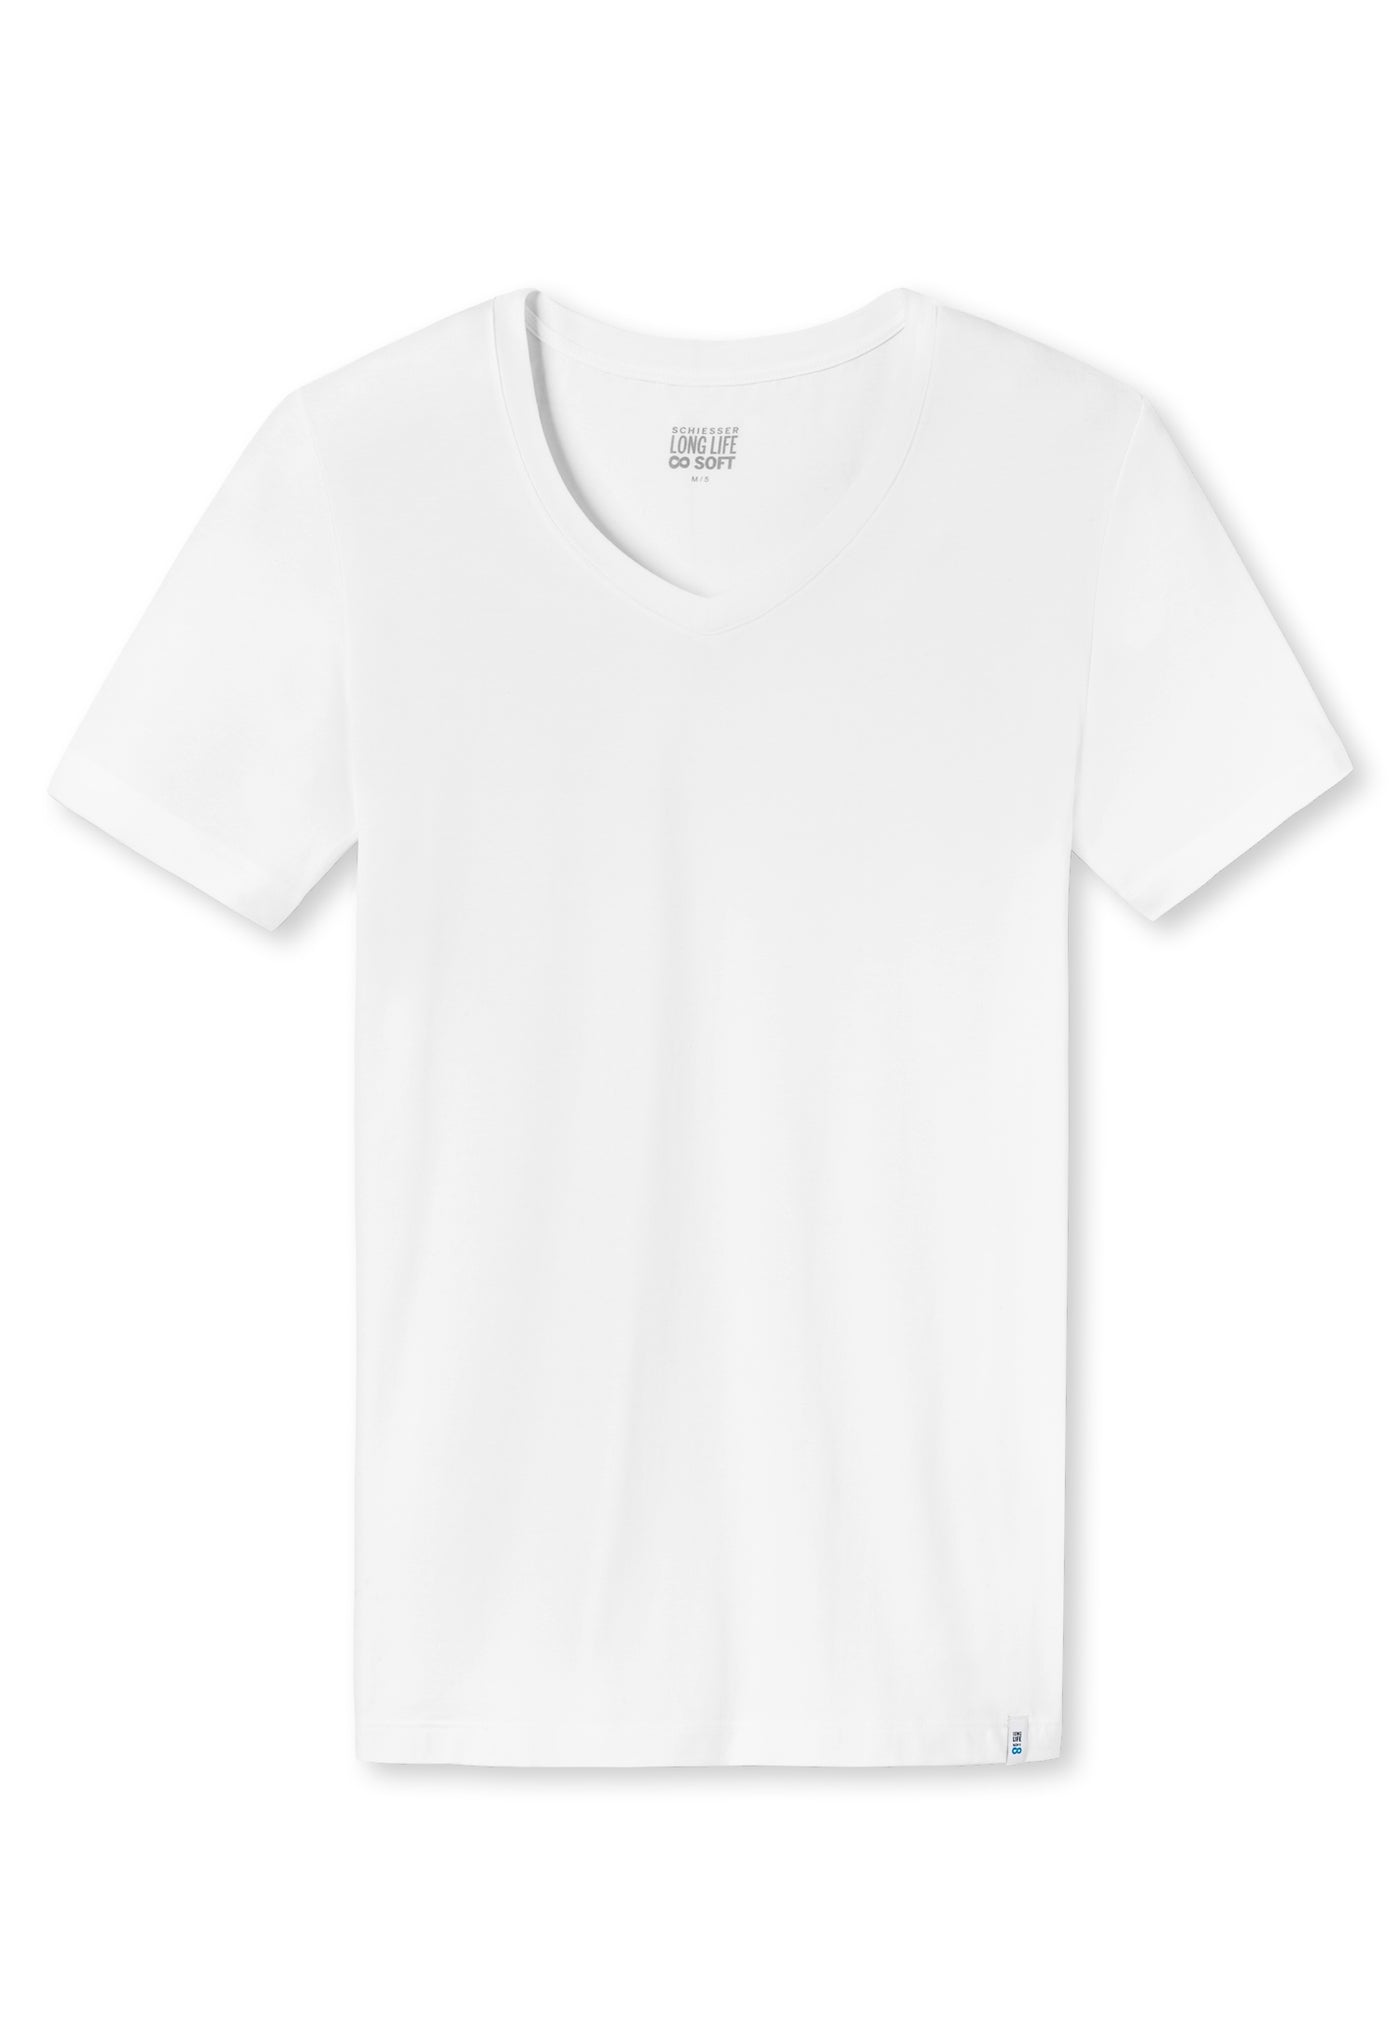 Schiesser - Long Life Soft - V-Neck T-Shirt